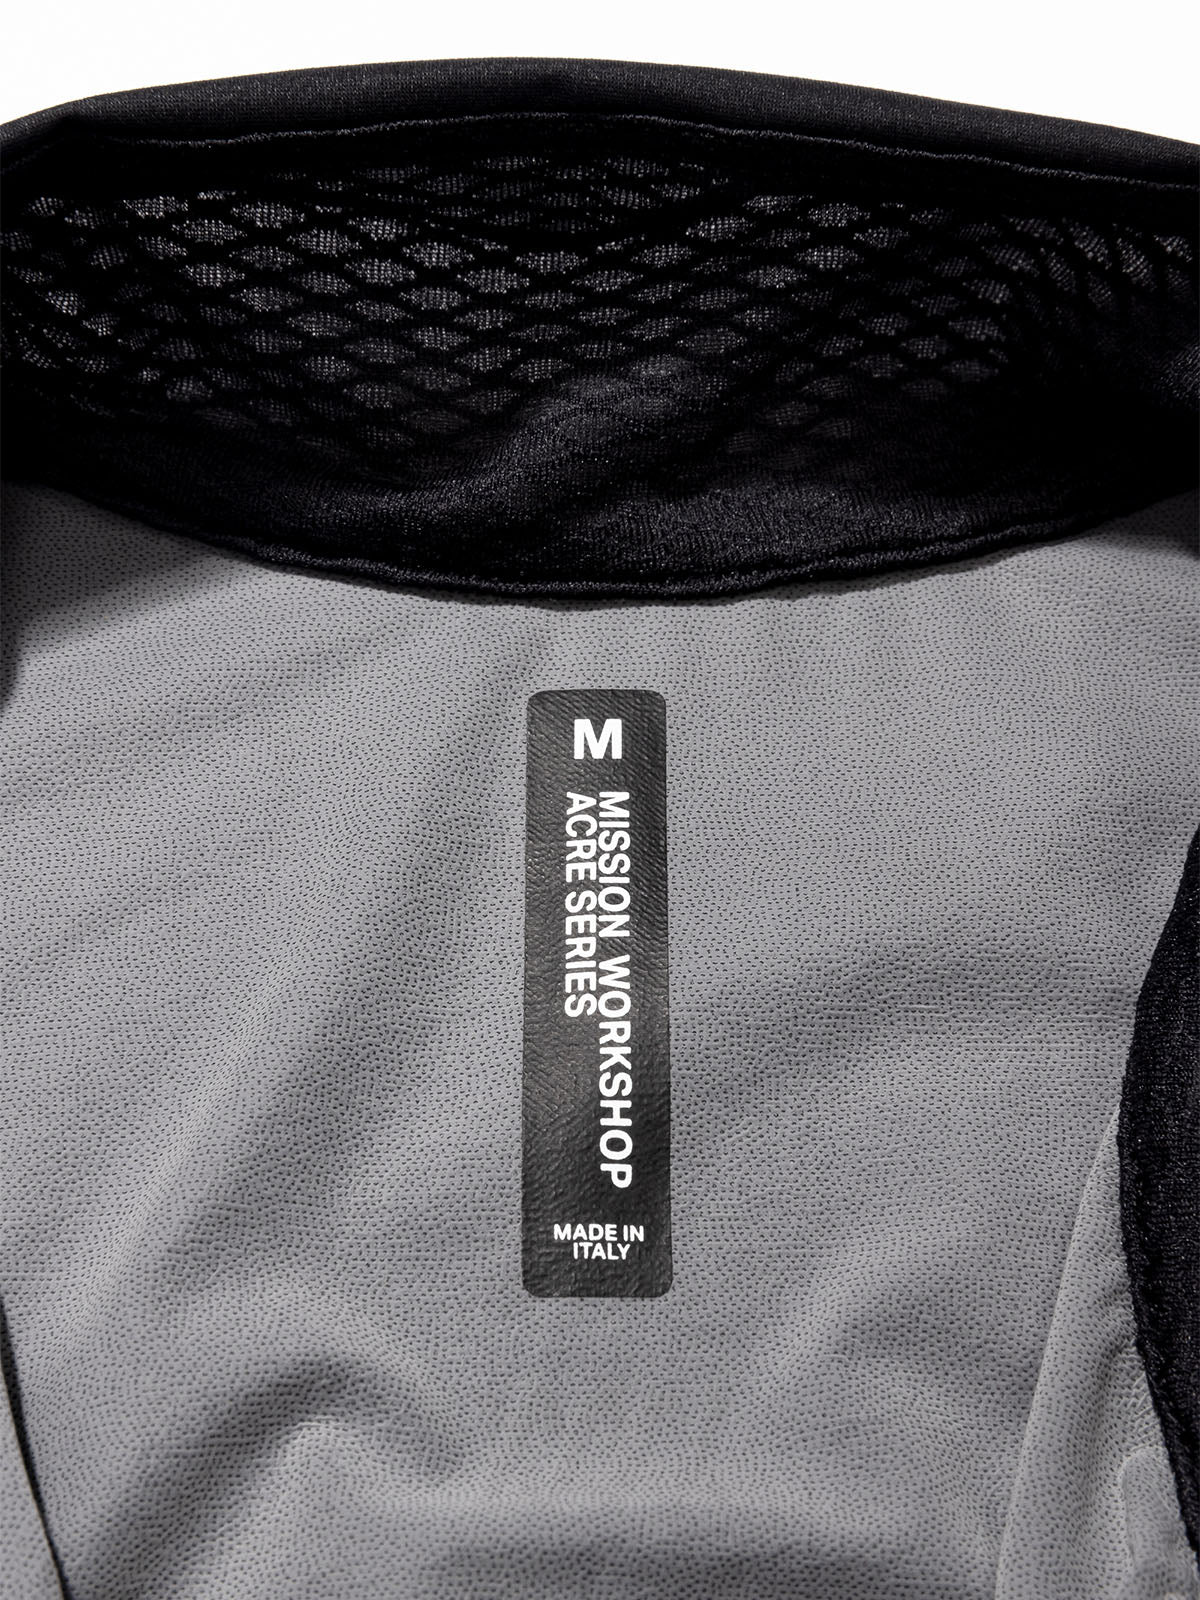 Altosphere Vest van Mission Workshop - Weerbestendige tassen & technische kleding - San Francisco & Los Angeles - Gemaakt om te doorstaan - Voor altijd gegarandeerd